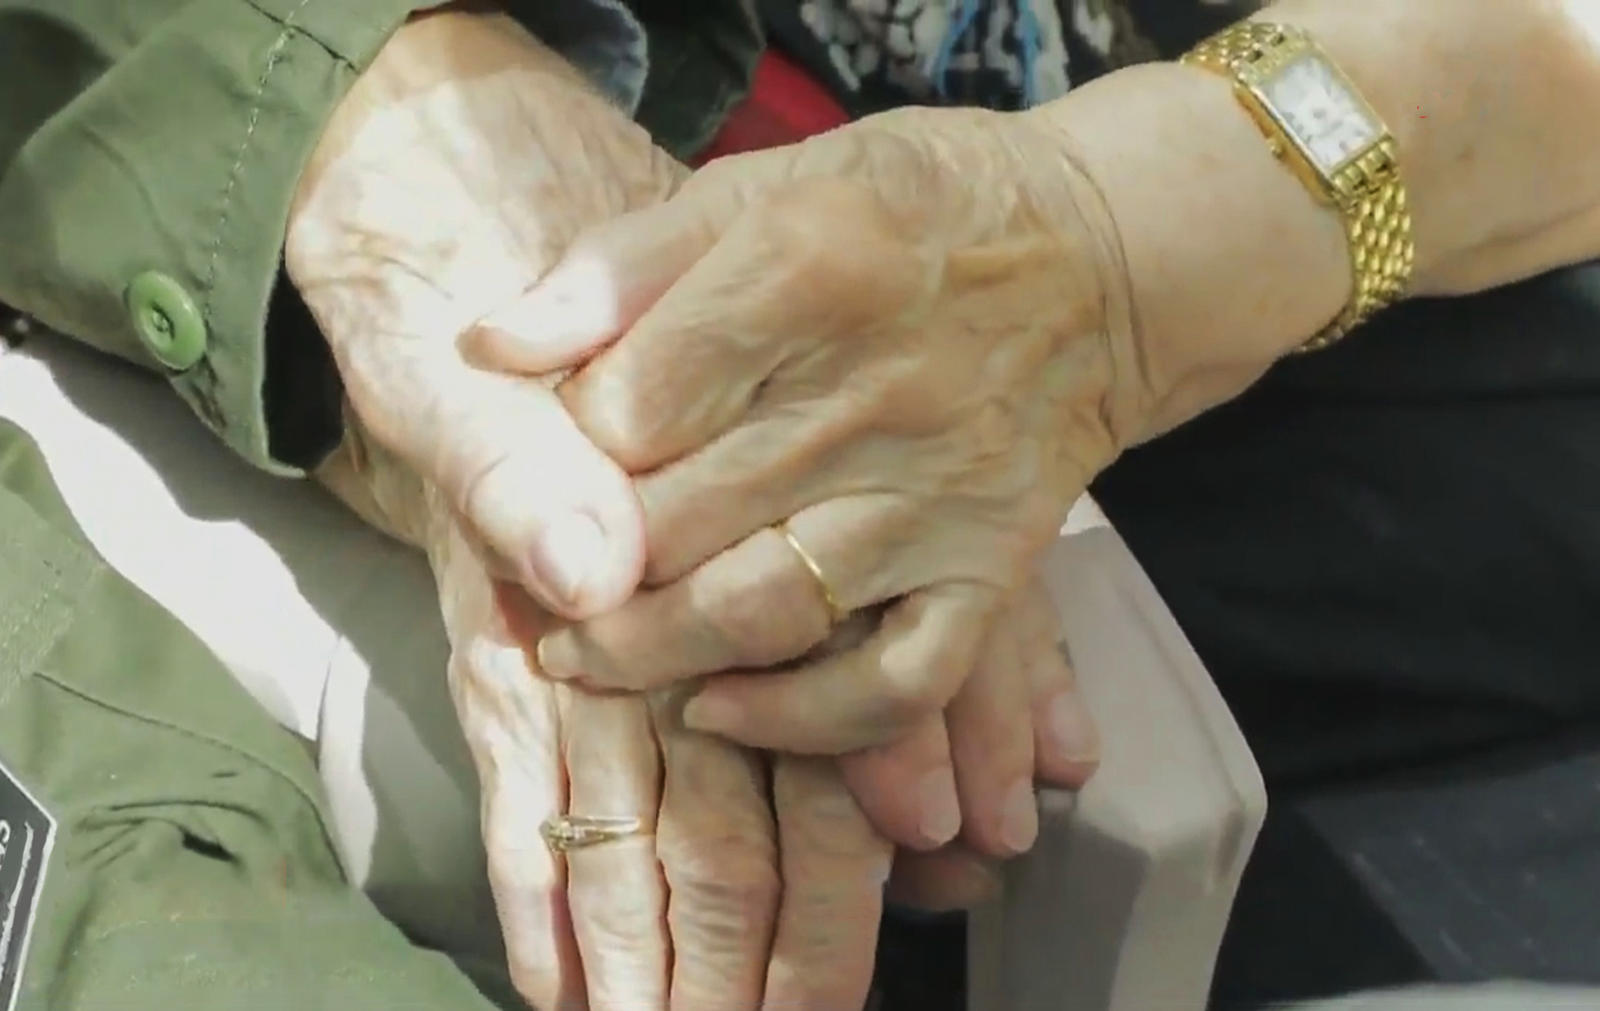 Двое влюблённых воссоединились спустя 75 лет разлуки